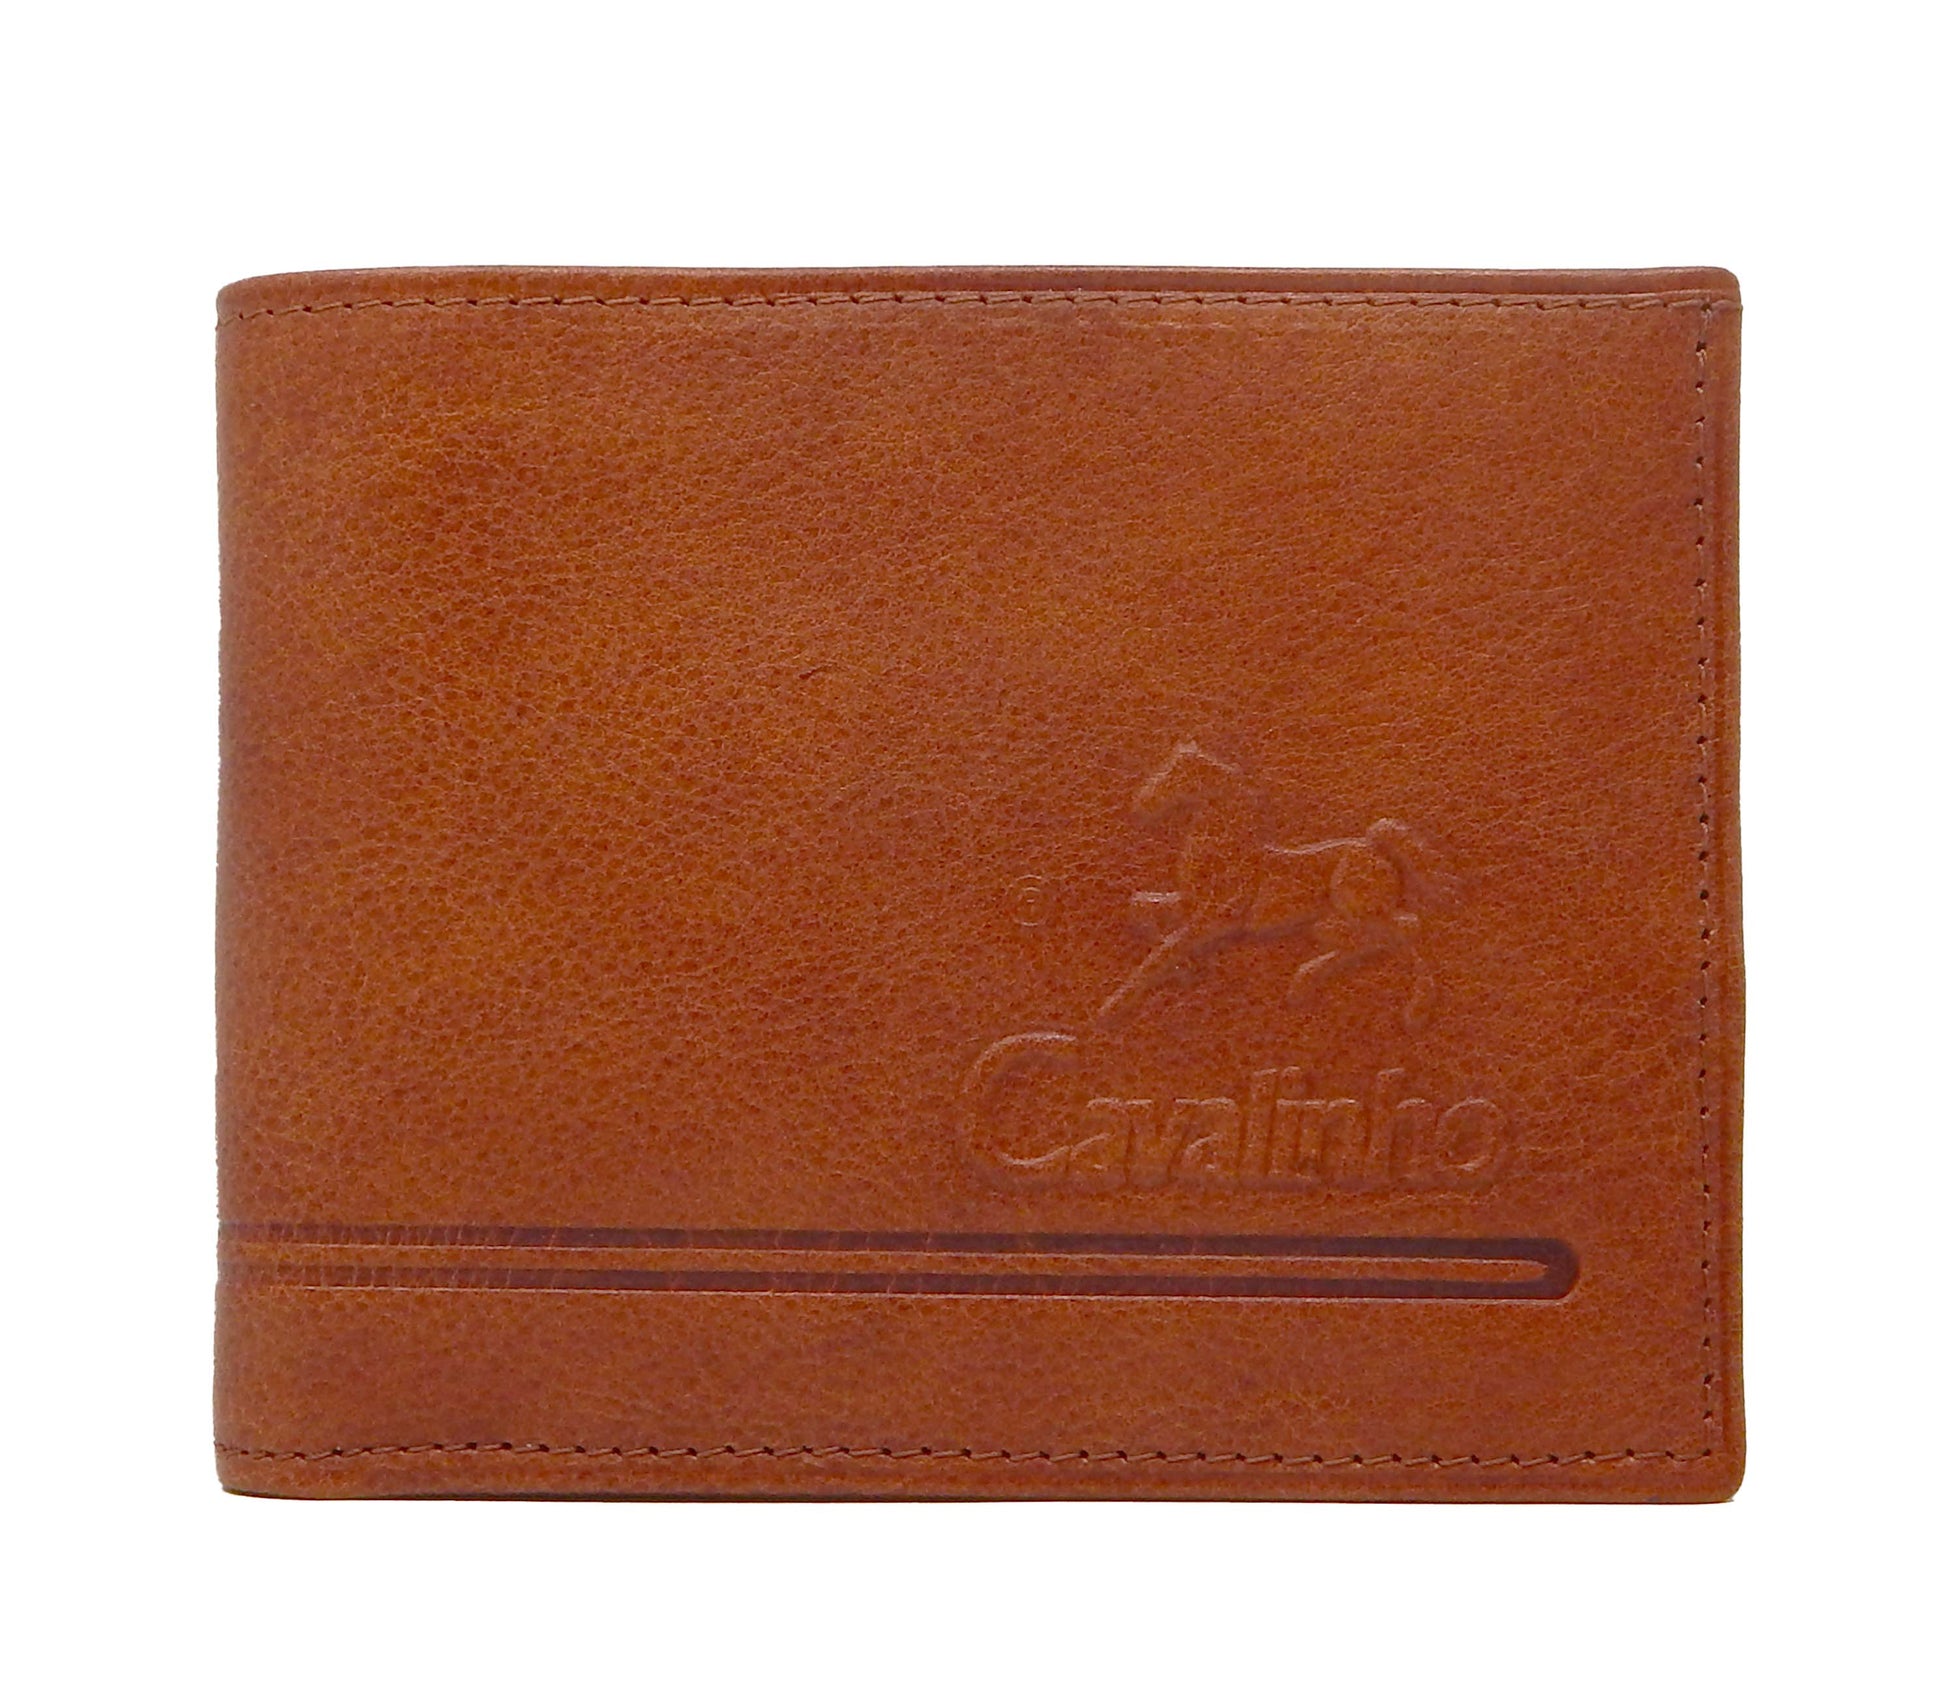 Cavalinho Men's Bifold Leather Wallet - SaddleBrown - 28160512.13.99_1